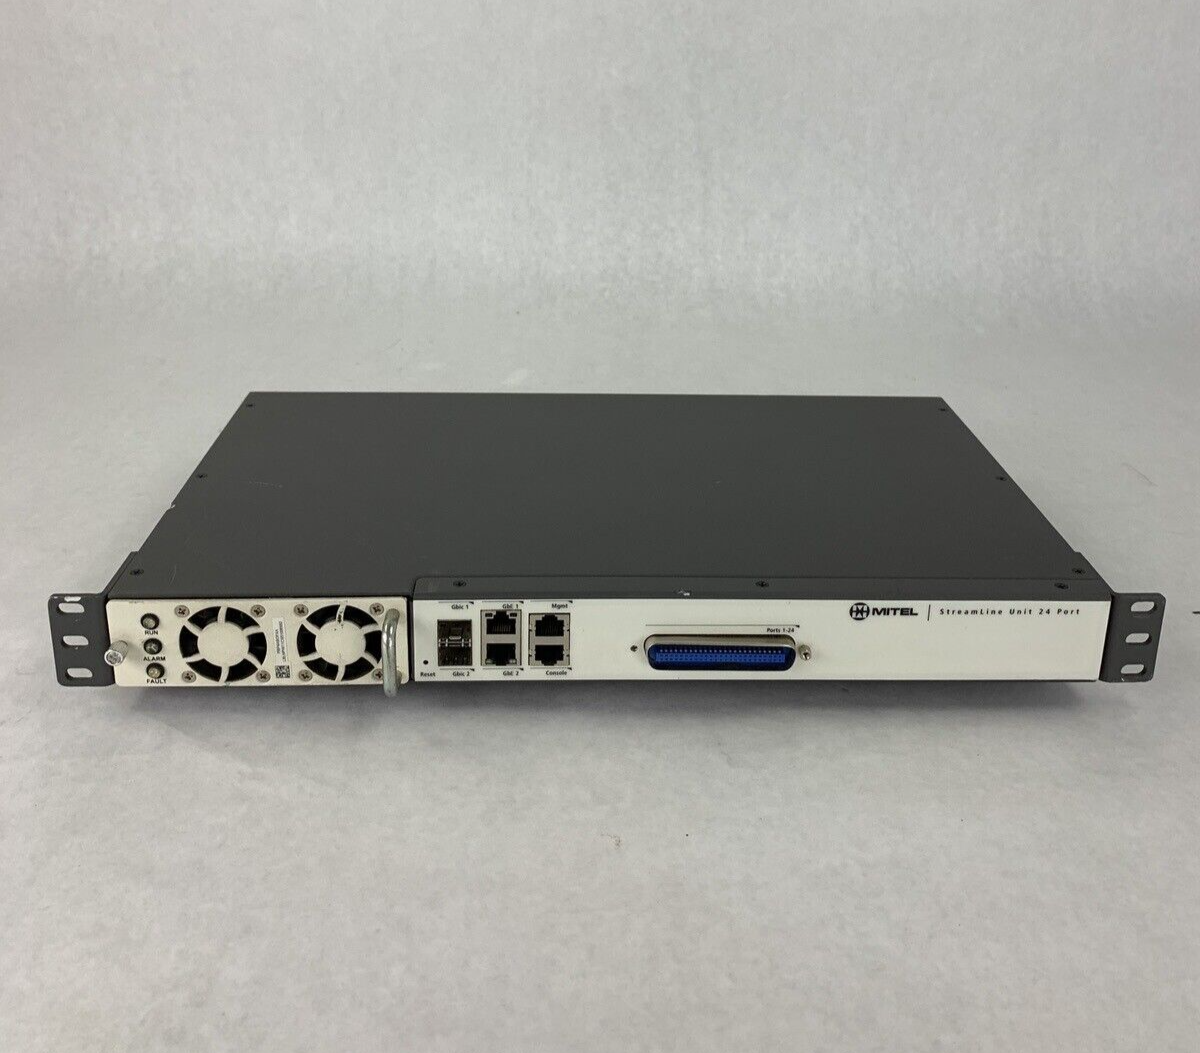 Mitel Unit T48 Port Streamline Switch 50006594 PL-024-MTL Tested